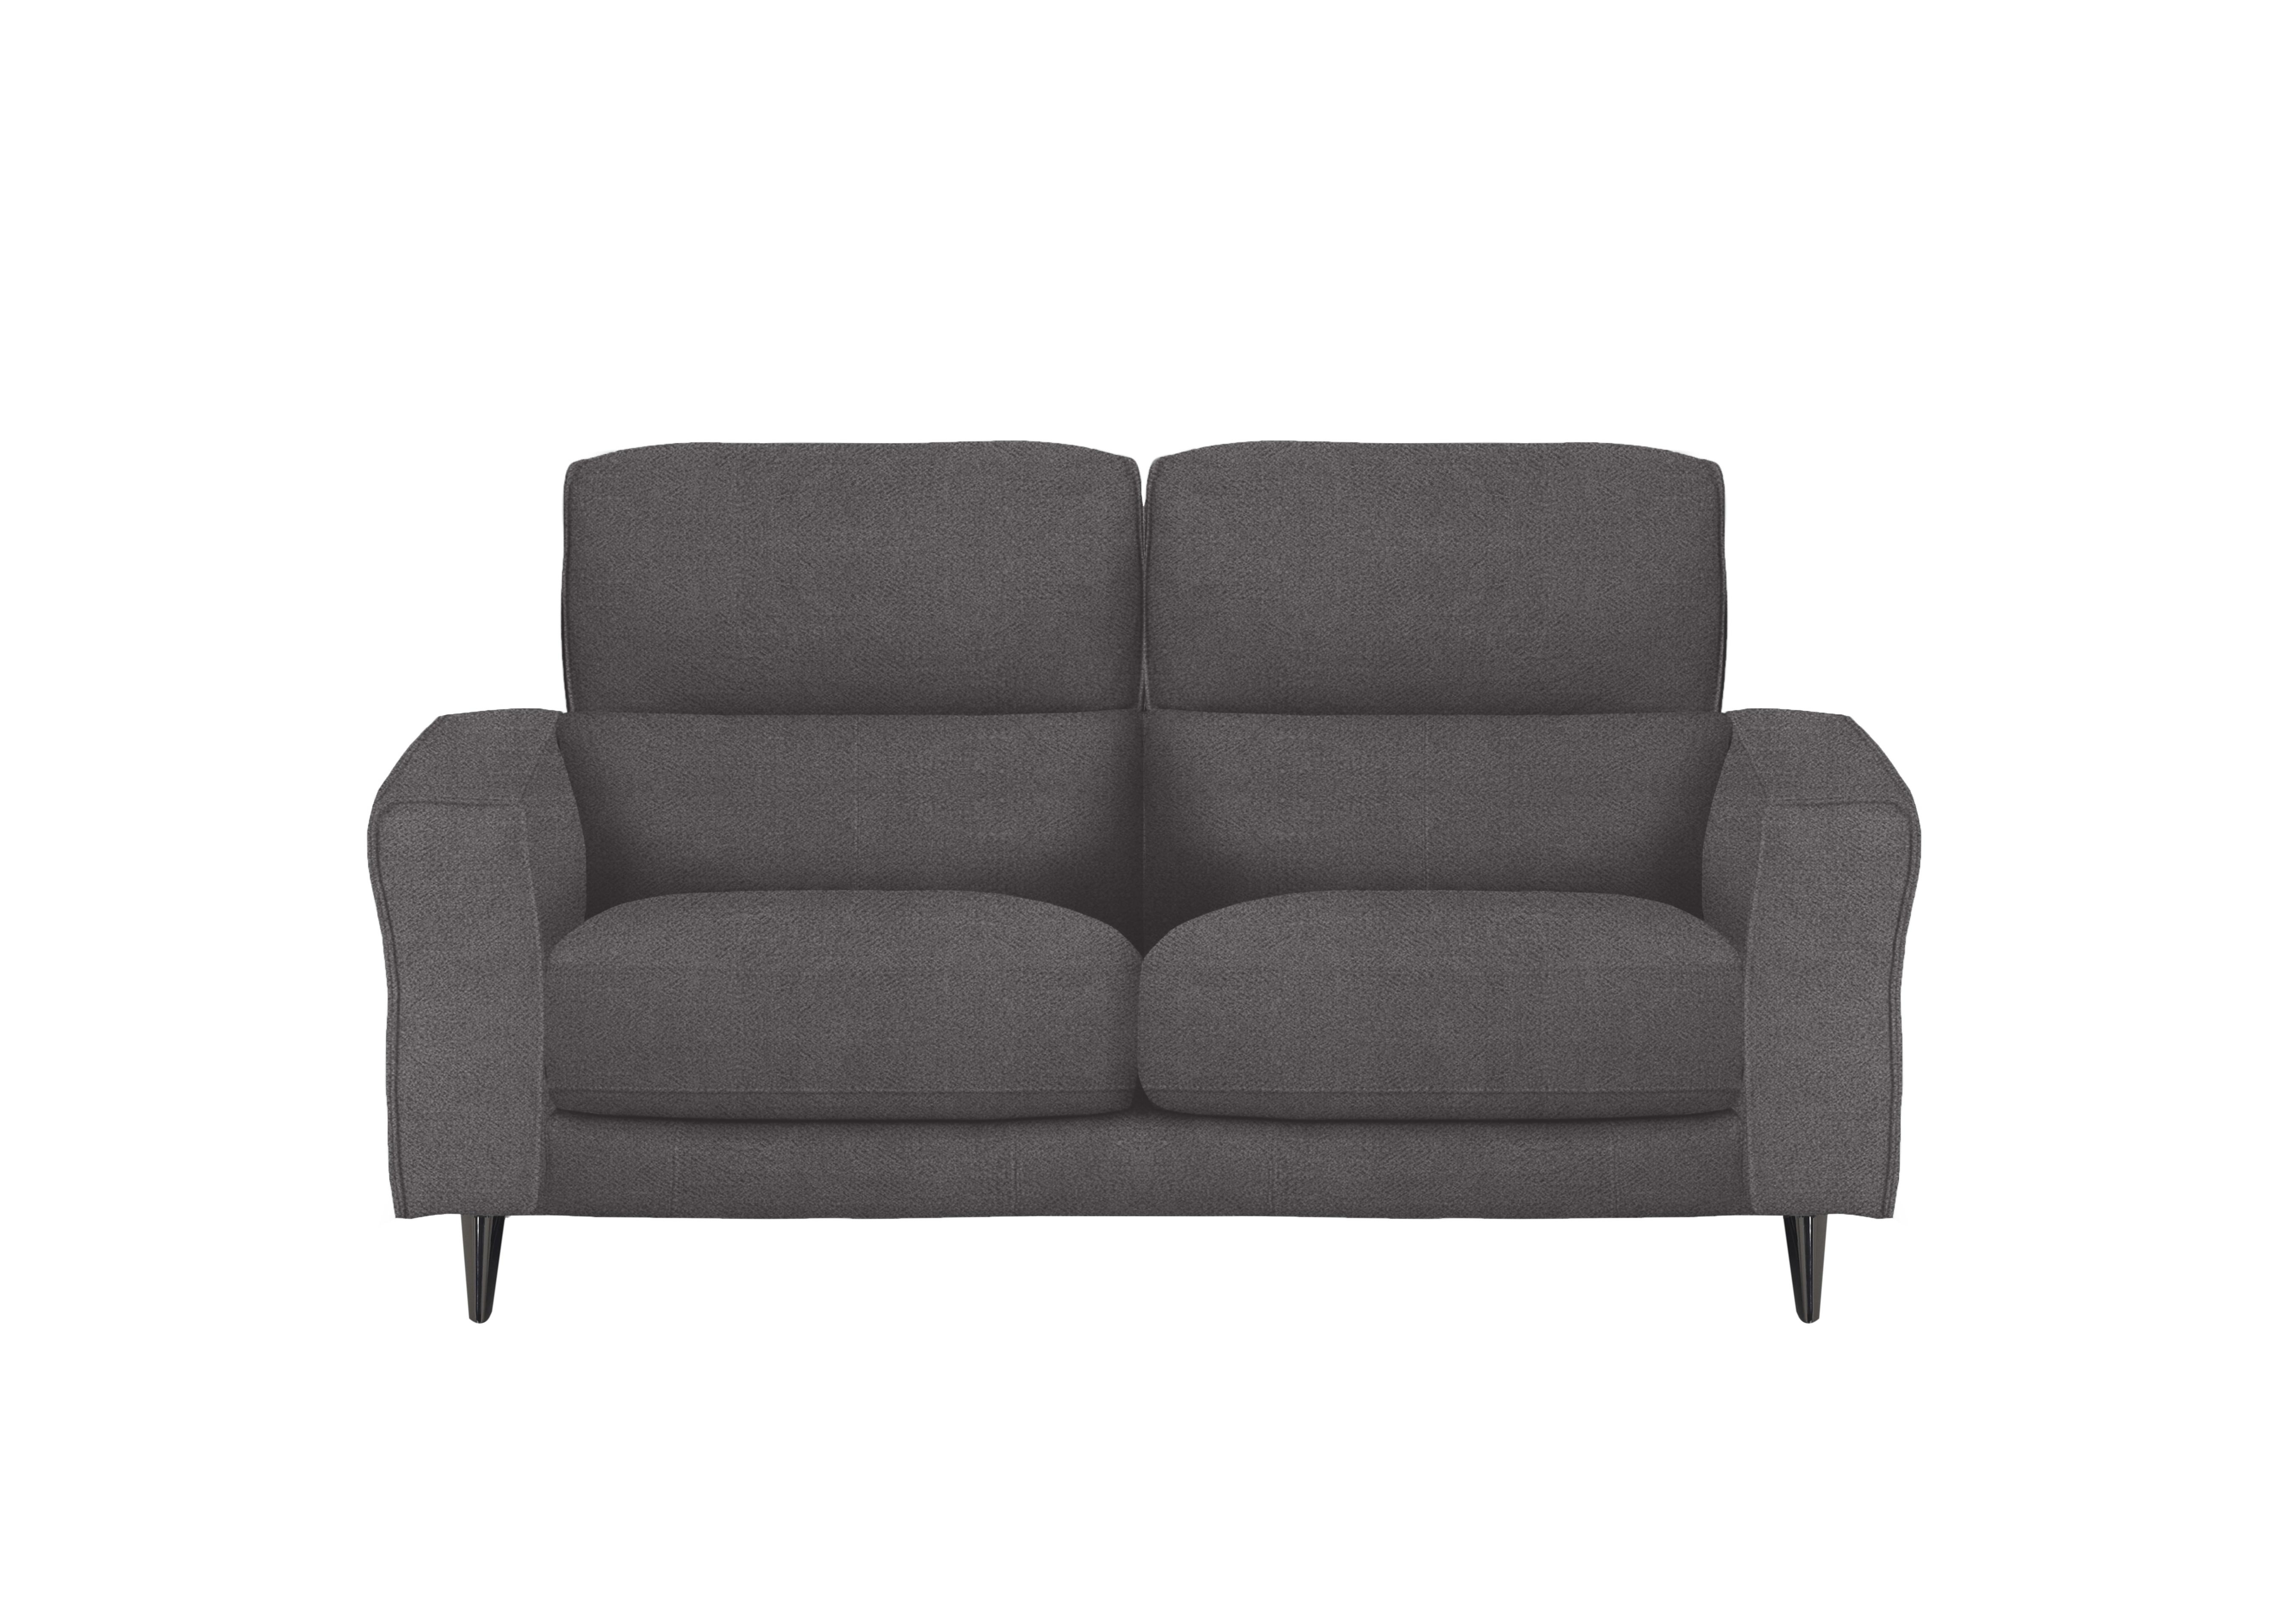 Axel 2 Seater Fabric Sofa in Fab-Meo-R25 Iron Grey on Furniture Village